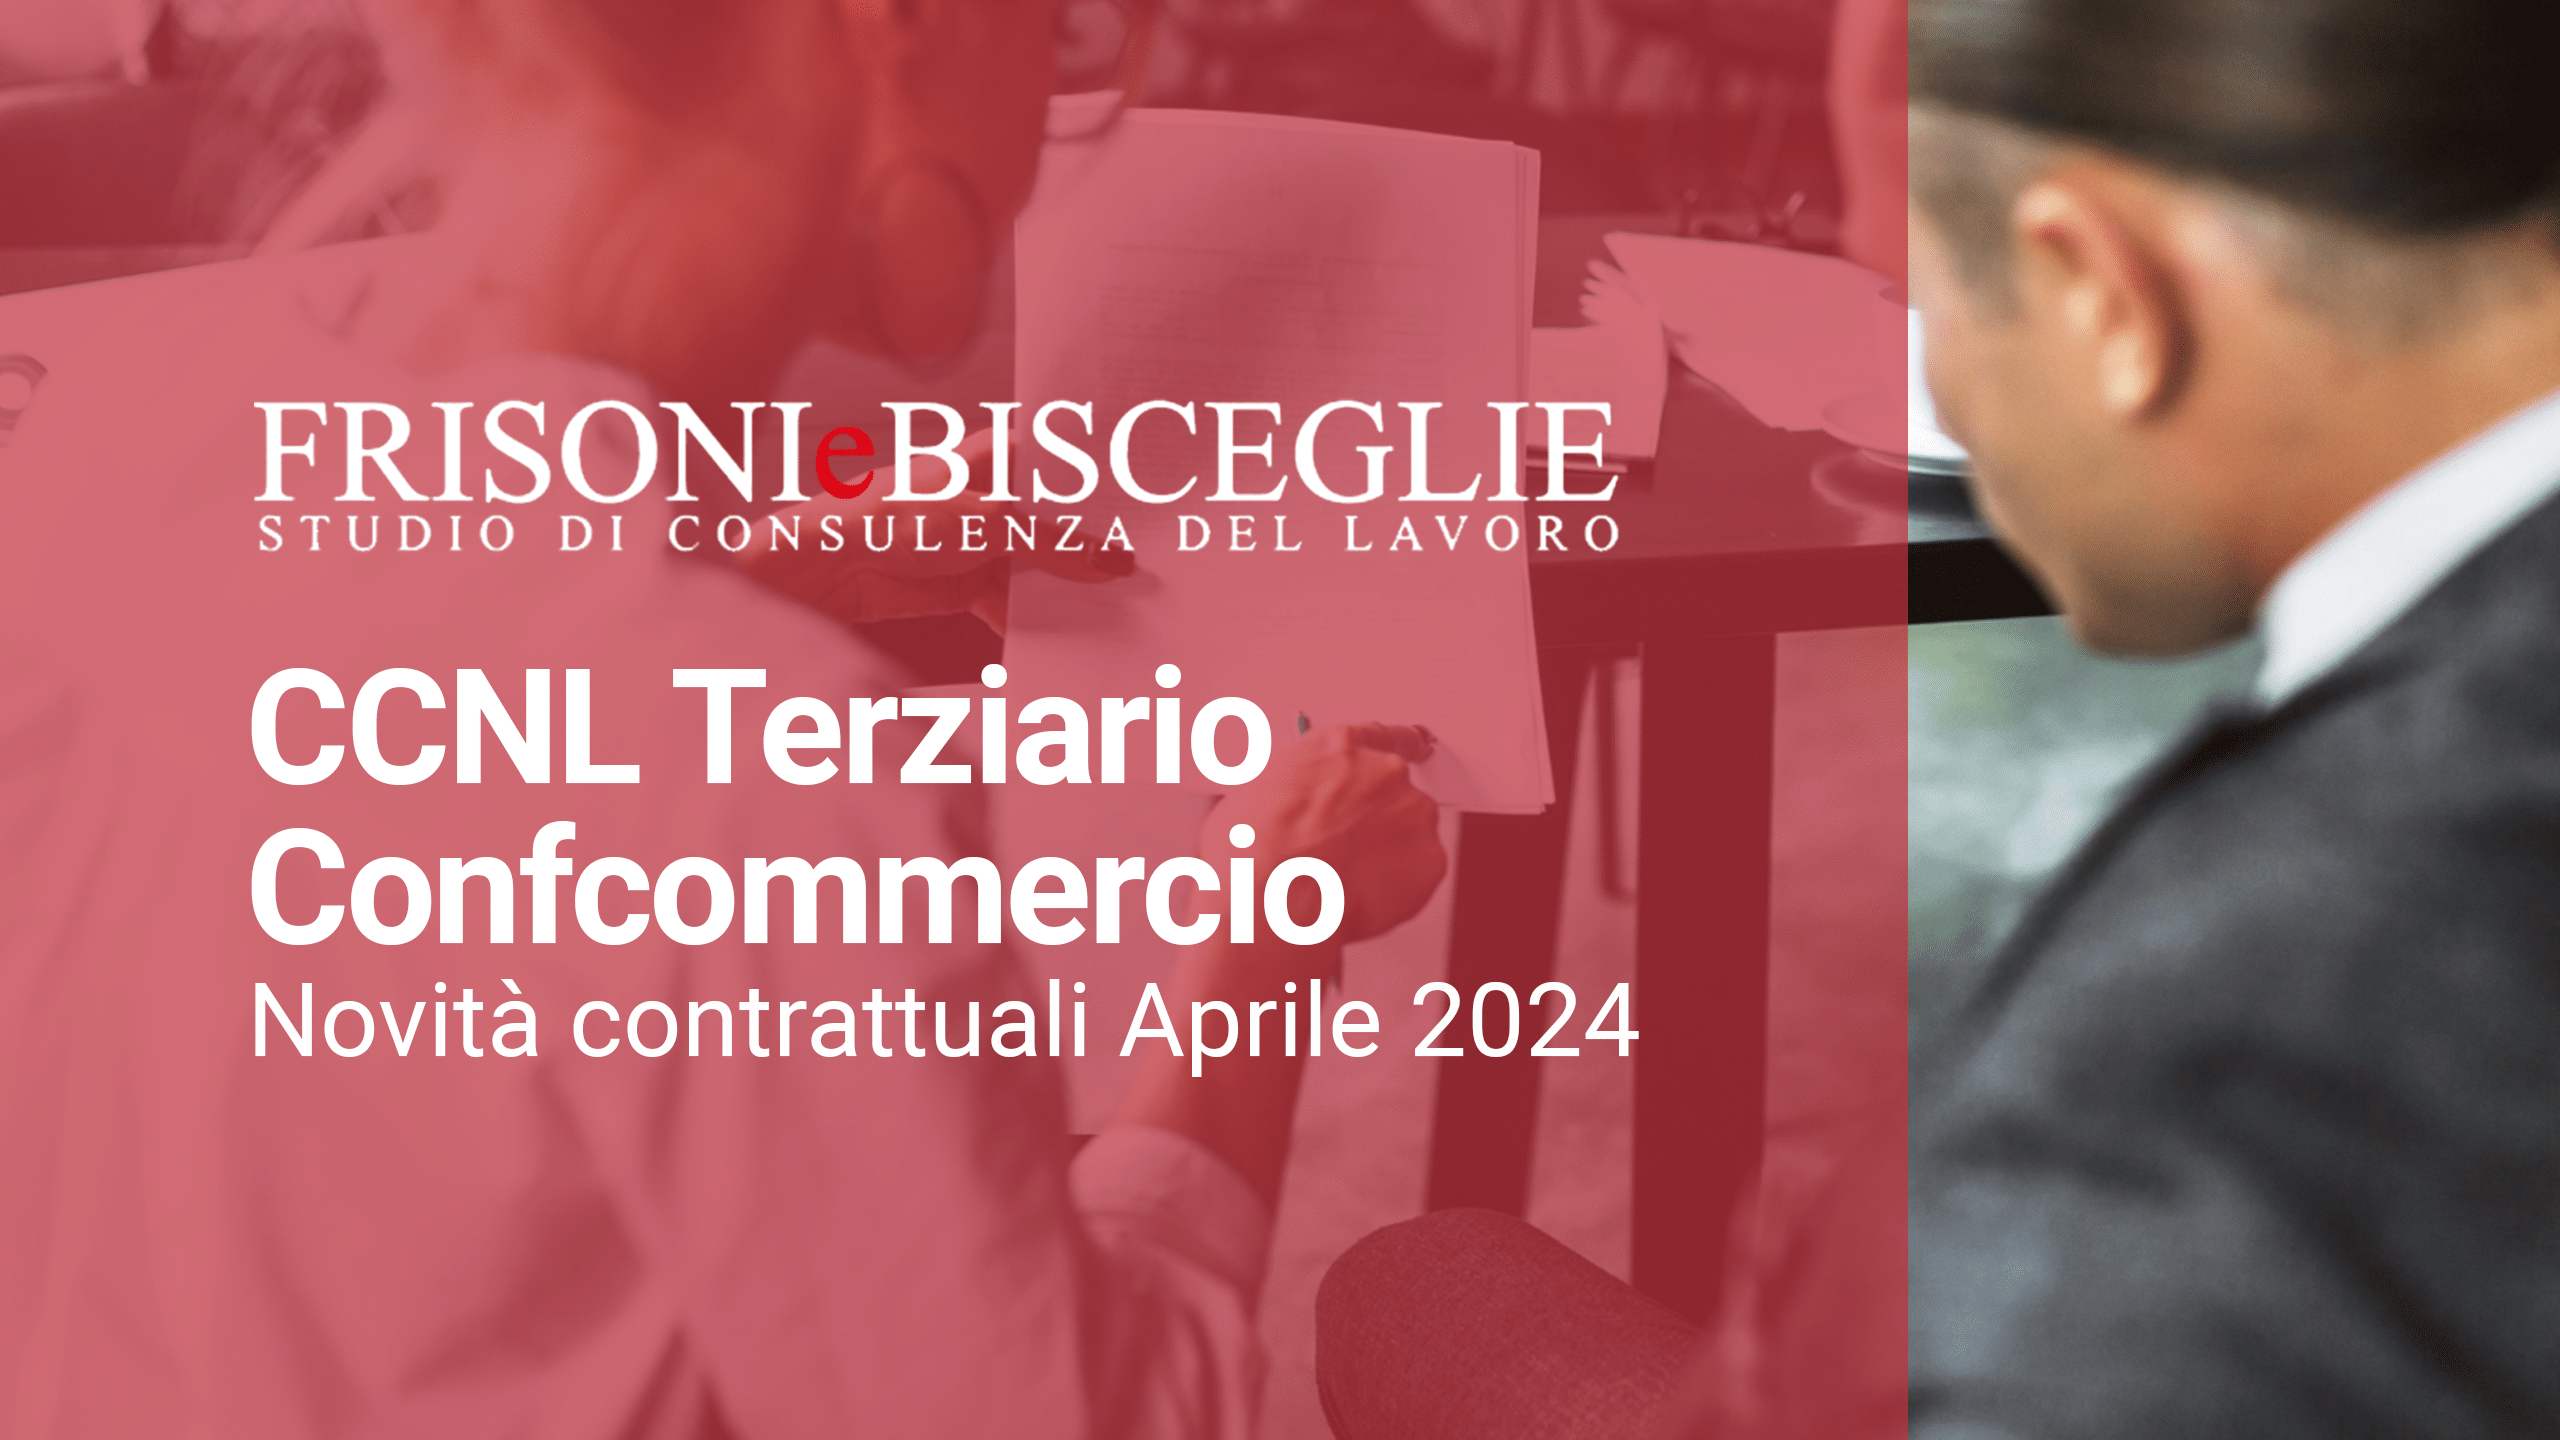 CCNL Terziario Confcommercio | Novità contrattuali Aprile 2024